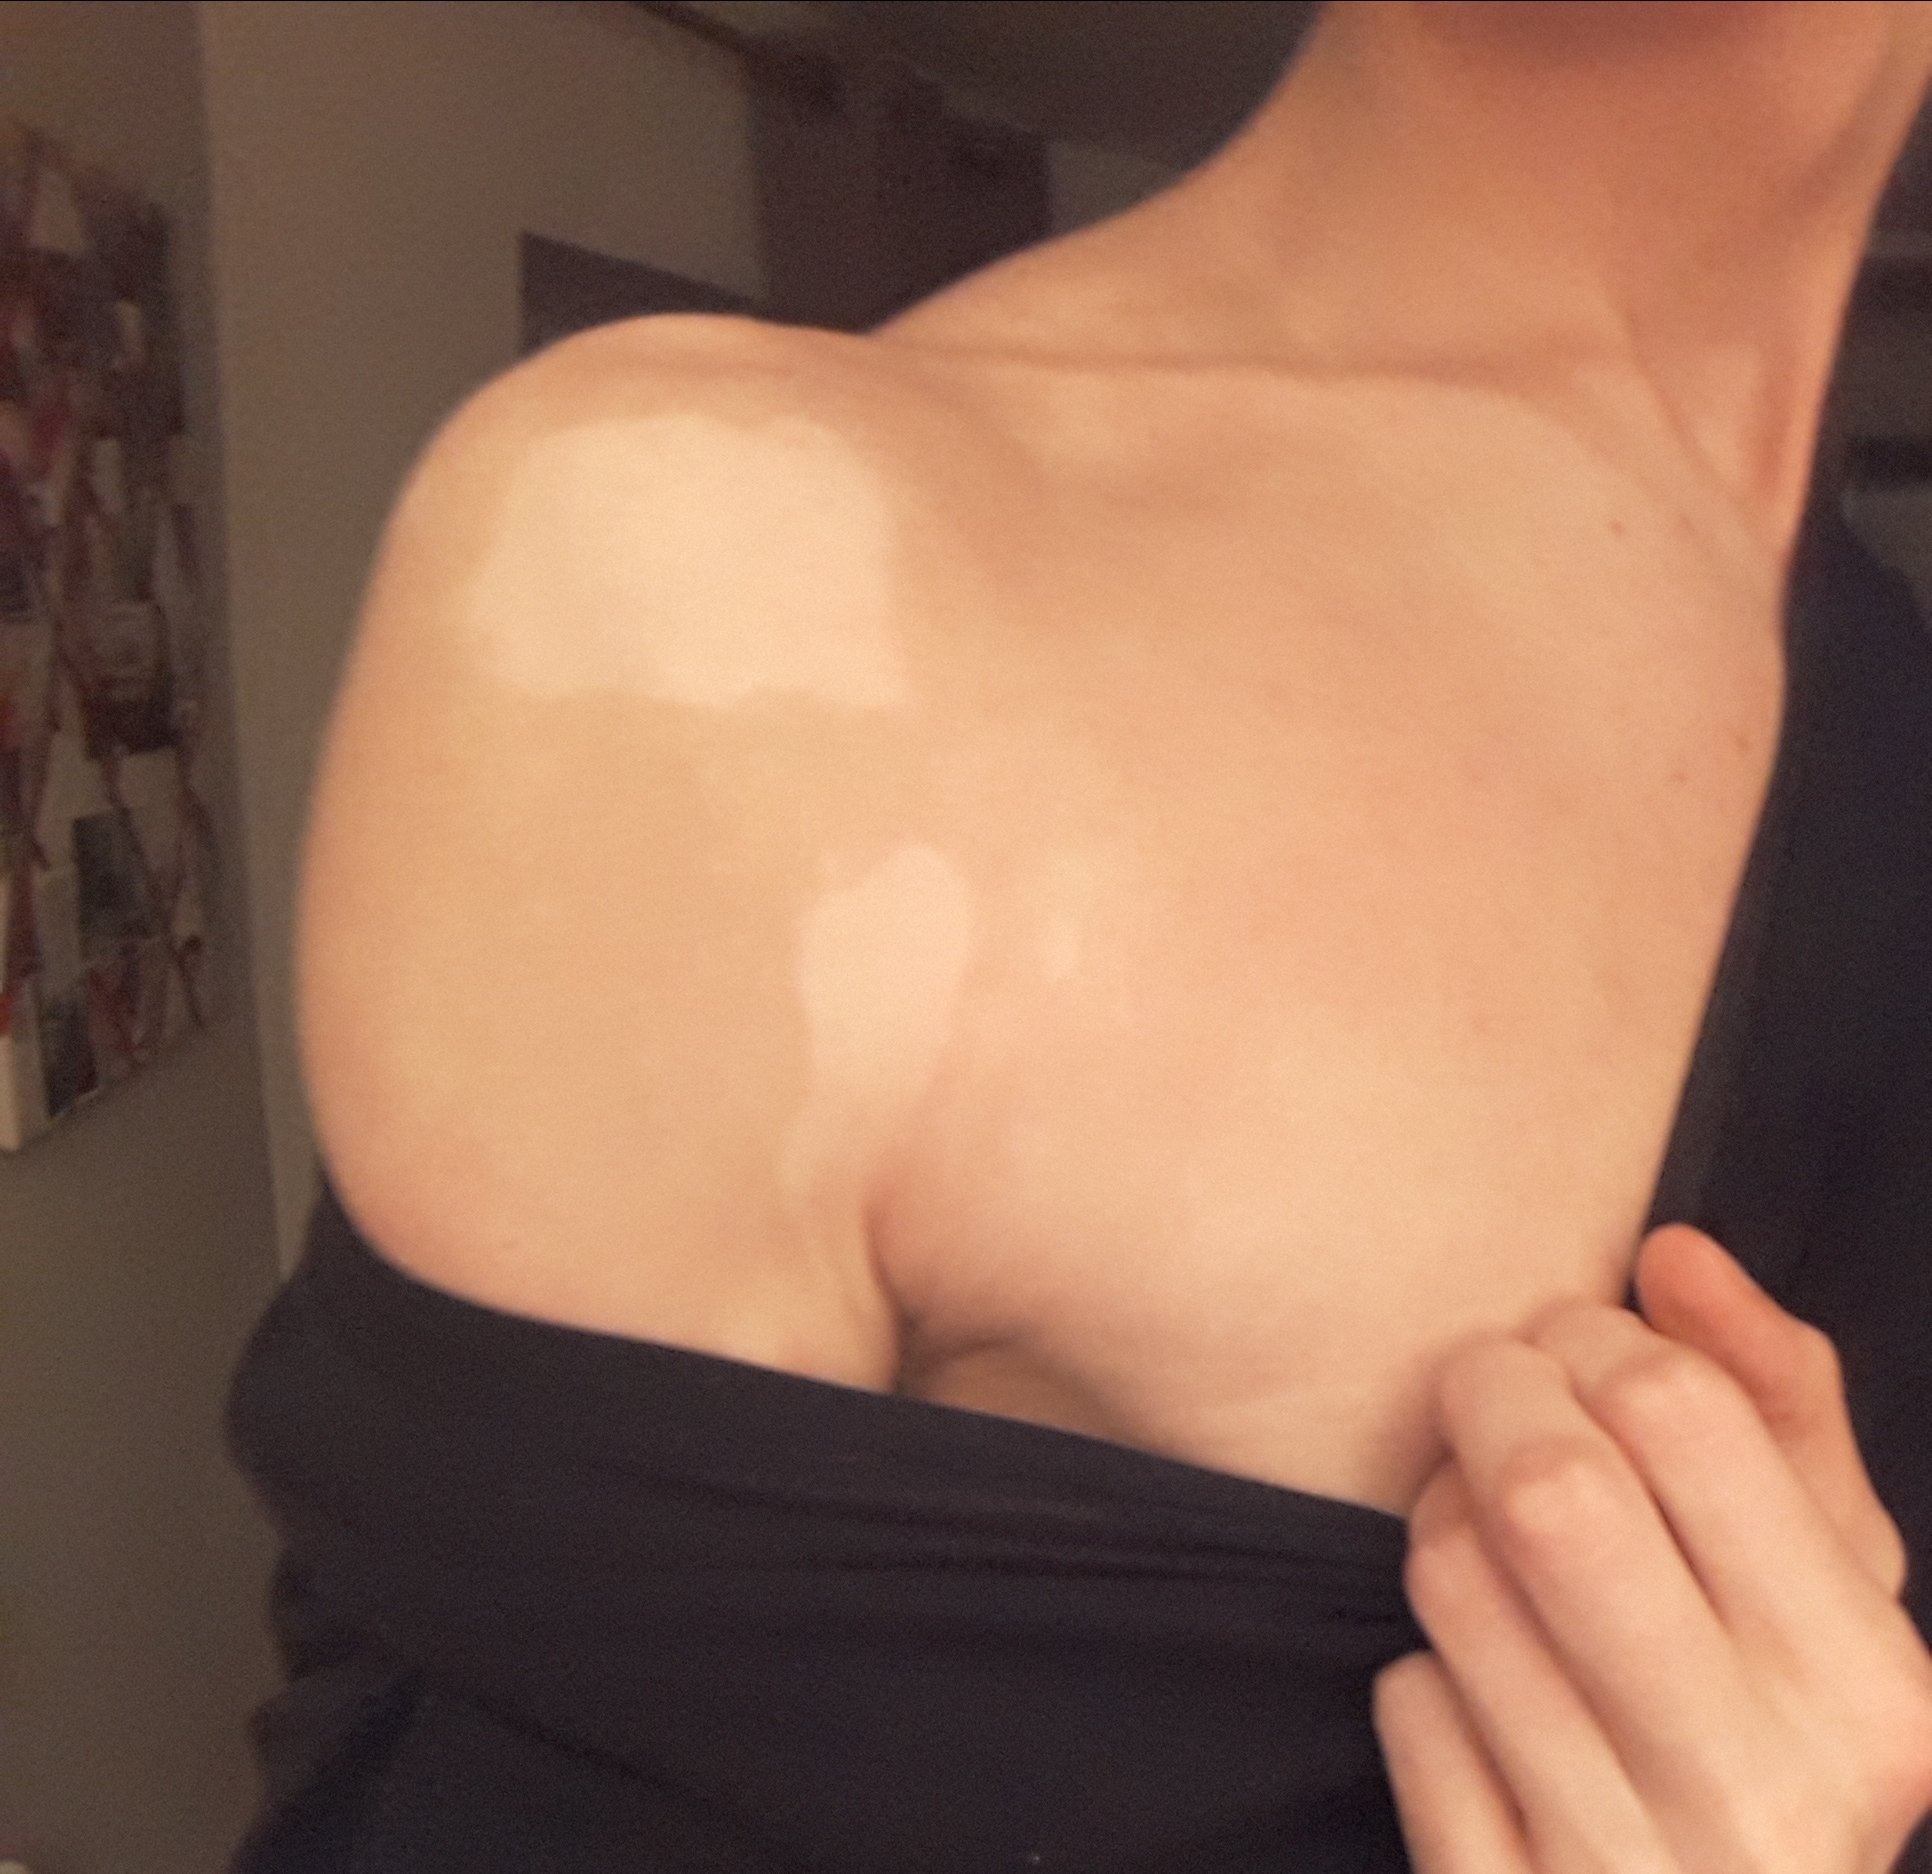 HELP les khey médecins: c'est un vitiligo? sur le forum Blabla 18 ...